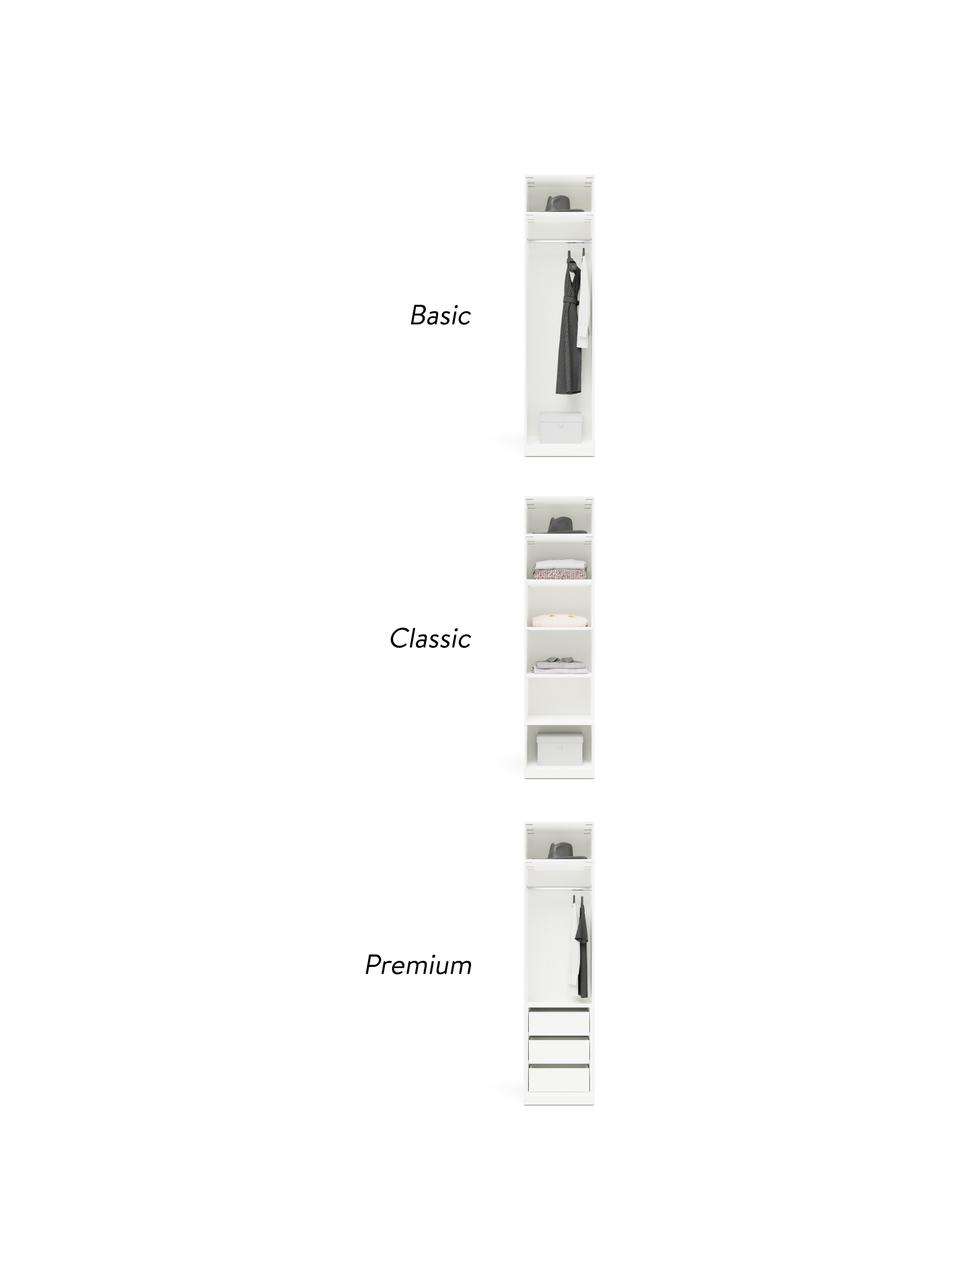 Modulaire draaideurkast Simone, 50 cm breed, meerdere varianten, Hout, beige, Basis interieur, hoogte 200 cm